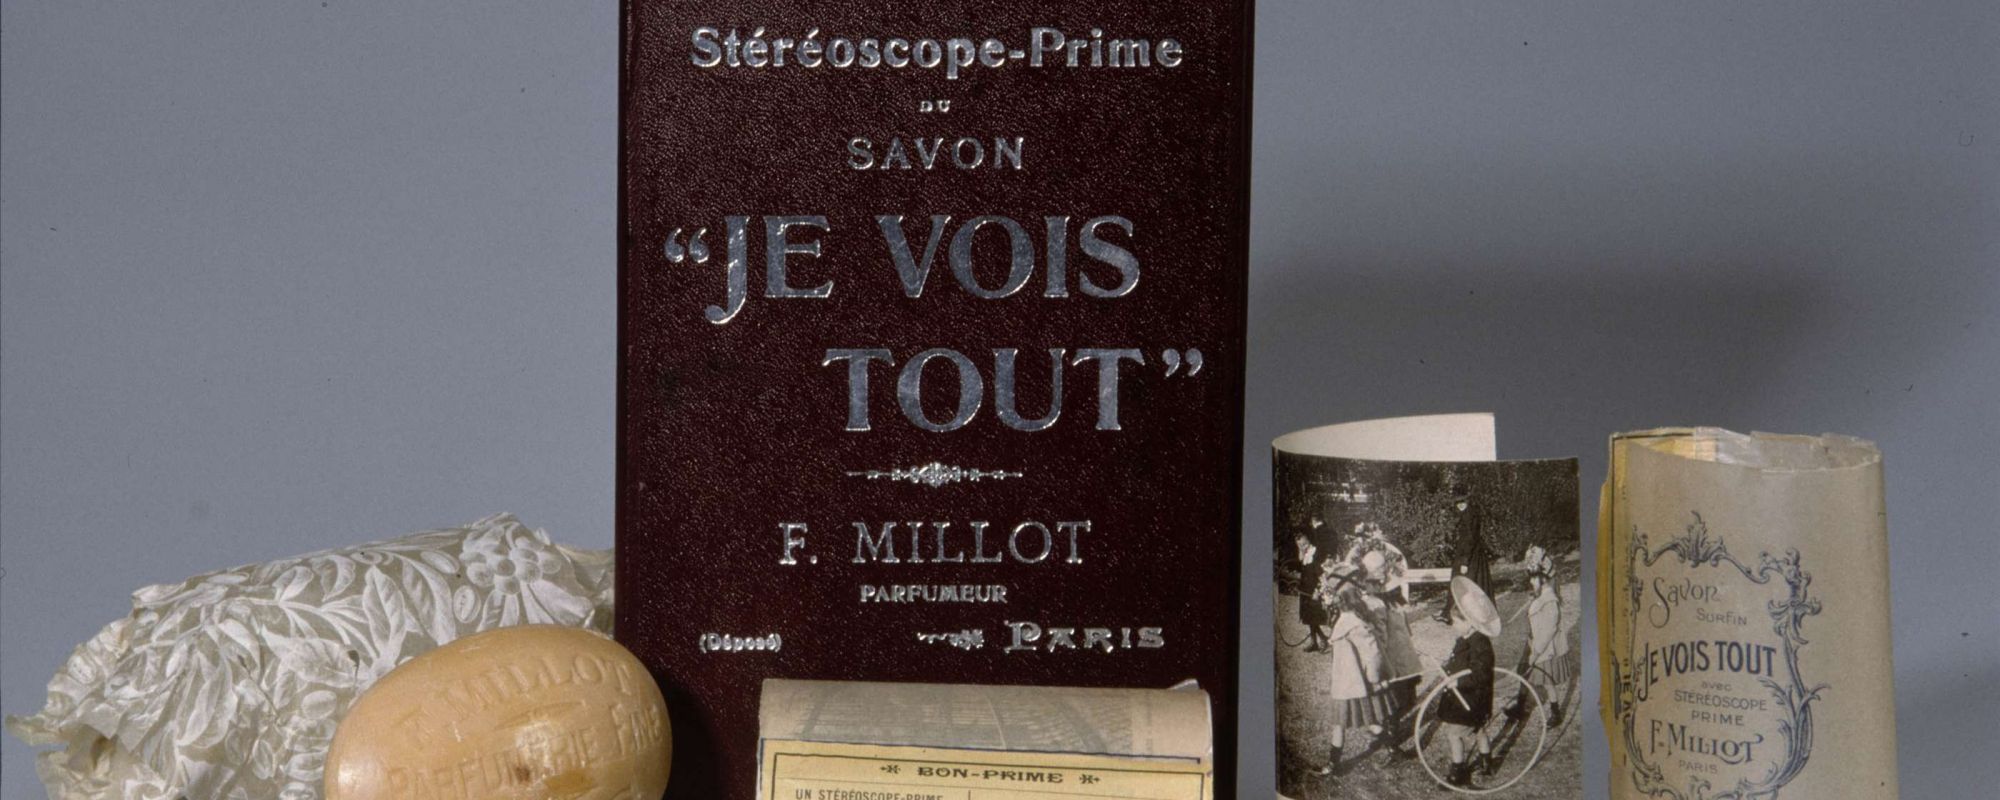 Parfumerie MILLOT, dépôt n° PC 13286, 9 octobre 1905, Coffret de savons "Je vois tout", accompagnés d'une paire de lunettes stéréoscopiques. Archives de Paris, D7U10 171.